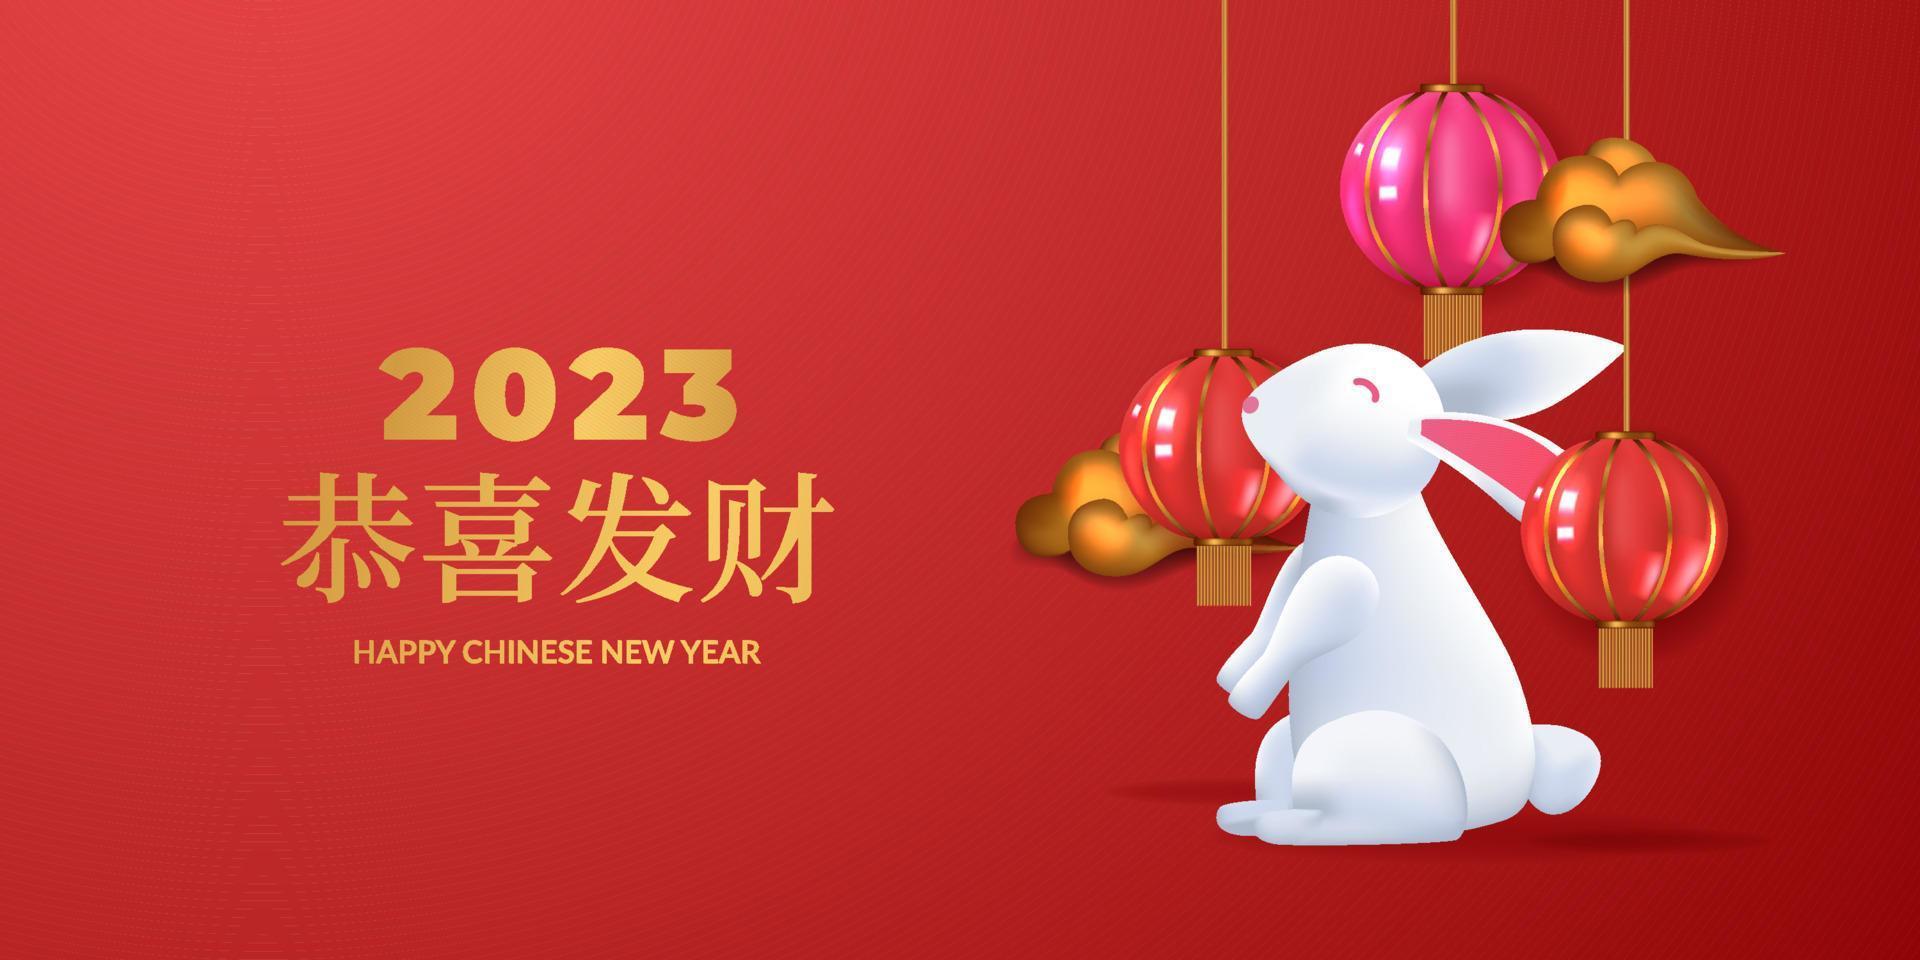 año nuevo chino 2023 año de conejo con conejito 3d y linterna colgante realista para plantilla de banner de tarjeta de felicitación vector